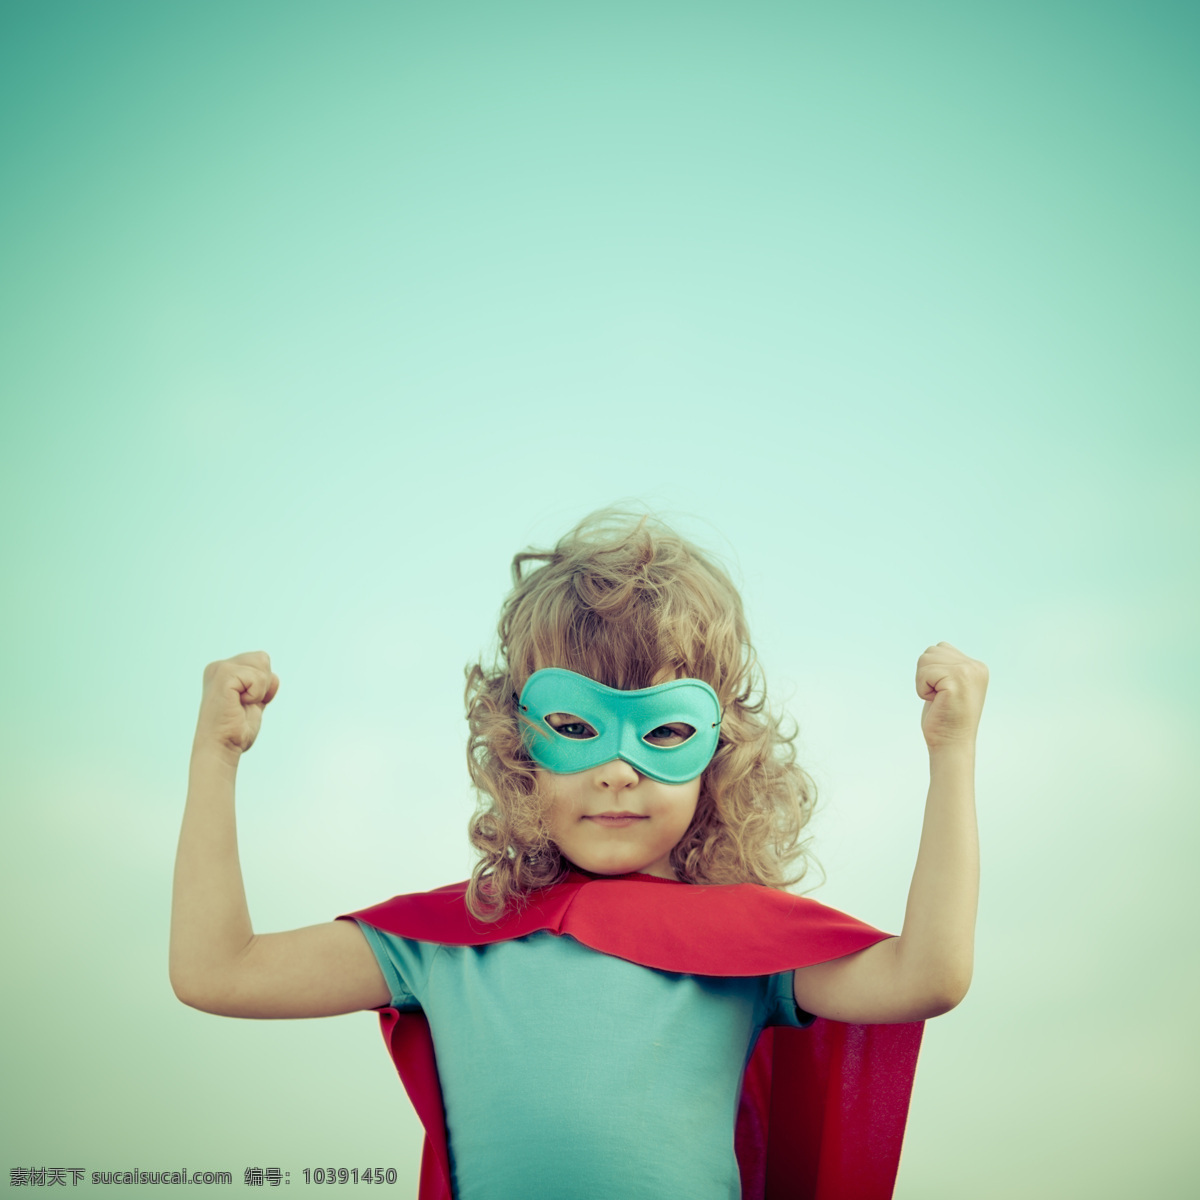 可爱 外国 儿童 戴面具的超人 小英雄 超级英雄 儿童超人 披风 儿童图片 人物图片